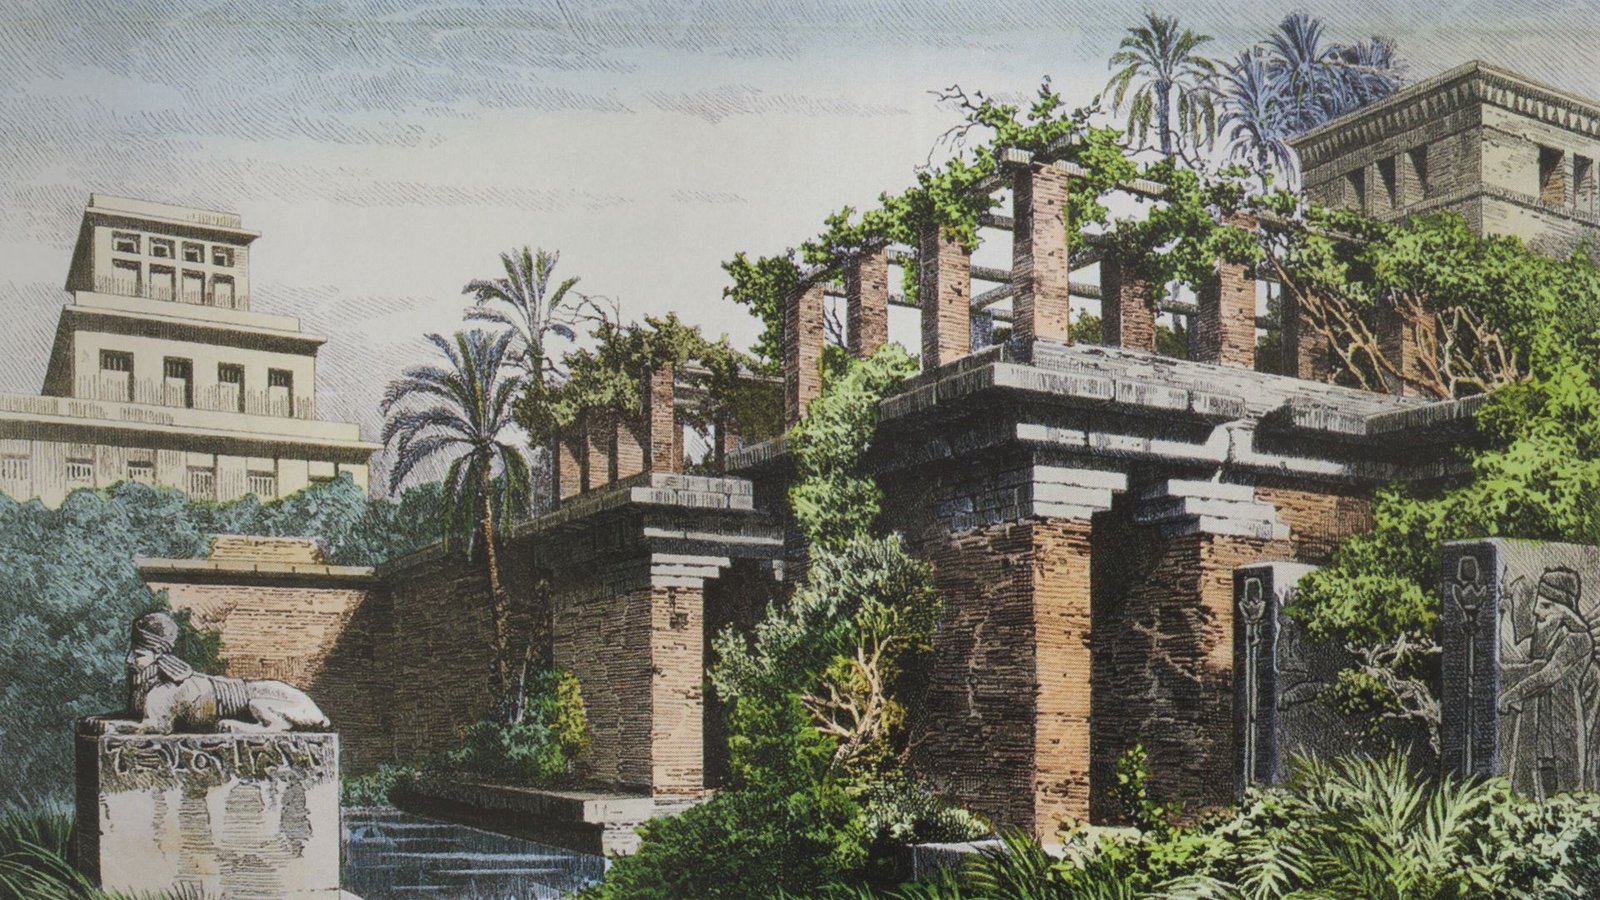 Die Hängenden Gärten der Semiramis, auch die Hängenden Gärten von Babylon genannt, waren nach den Berichten griechischer Autoren eine aufwendige Gartenanlage in Babylon am Euphrat. Sie zählten zu den sieben Weltwundern der Antike.Foto: Imago/Pond5 Images